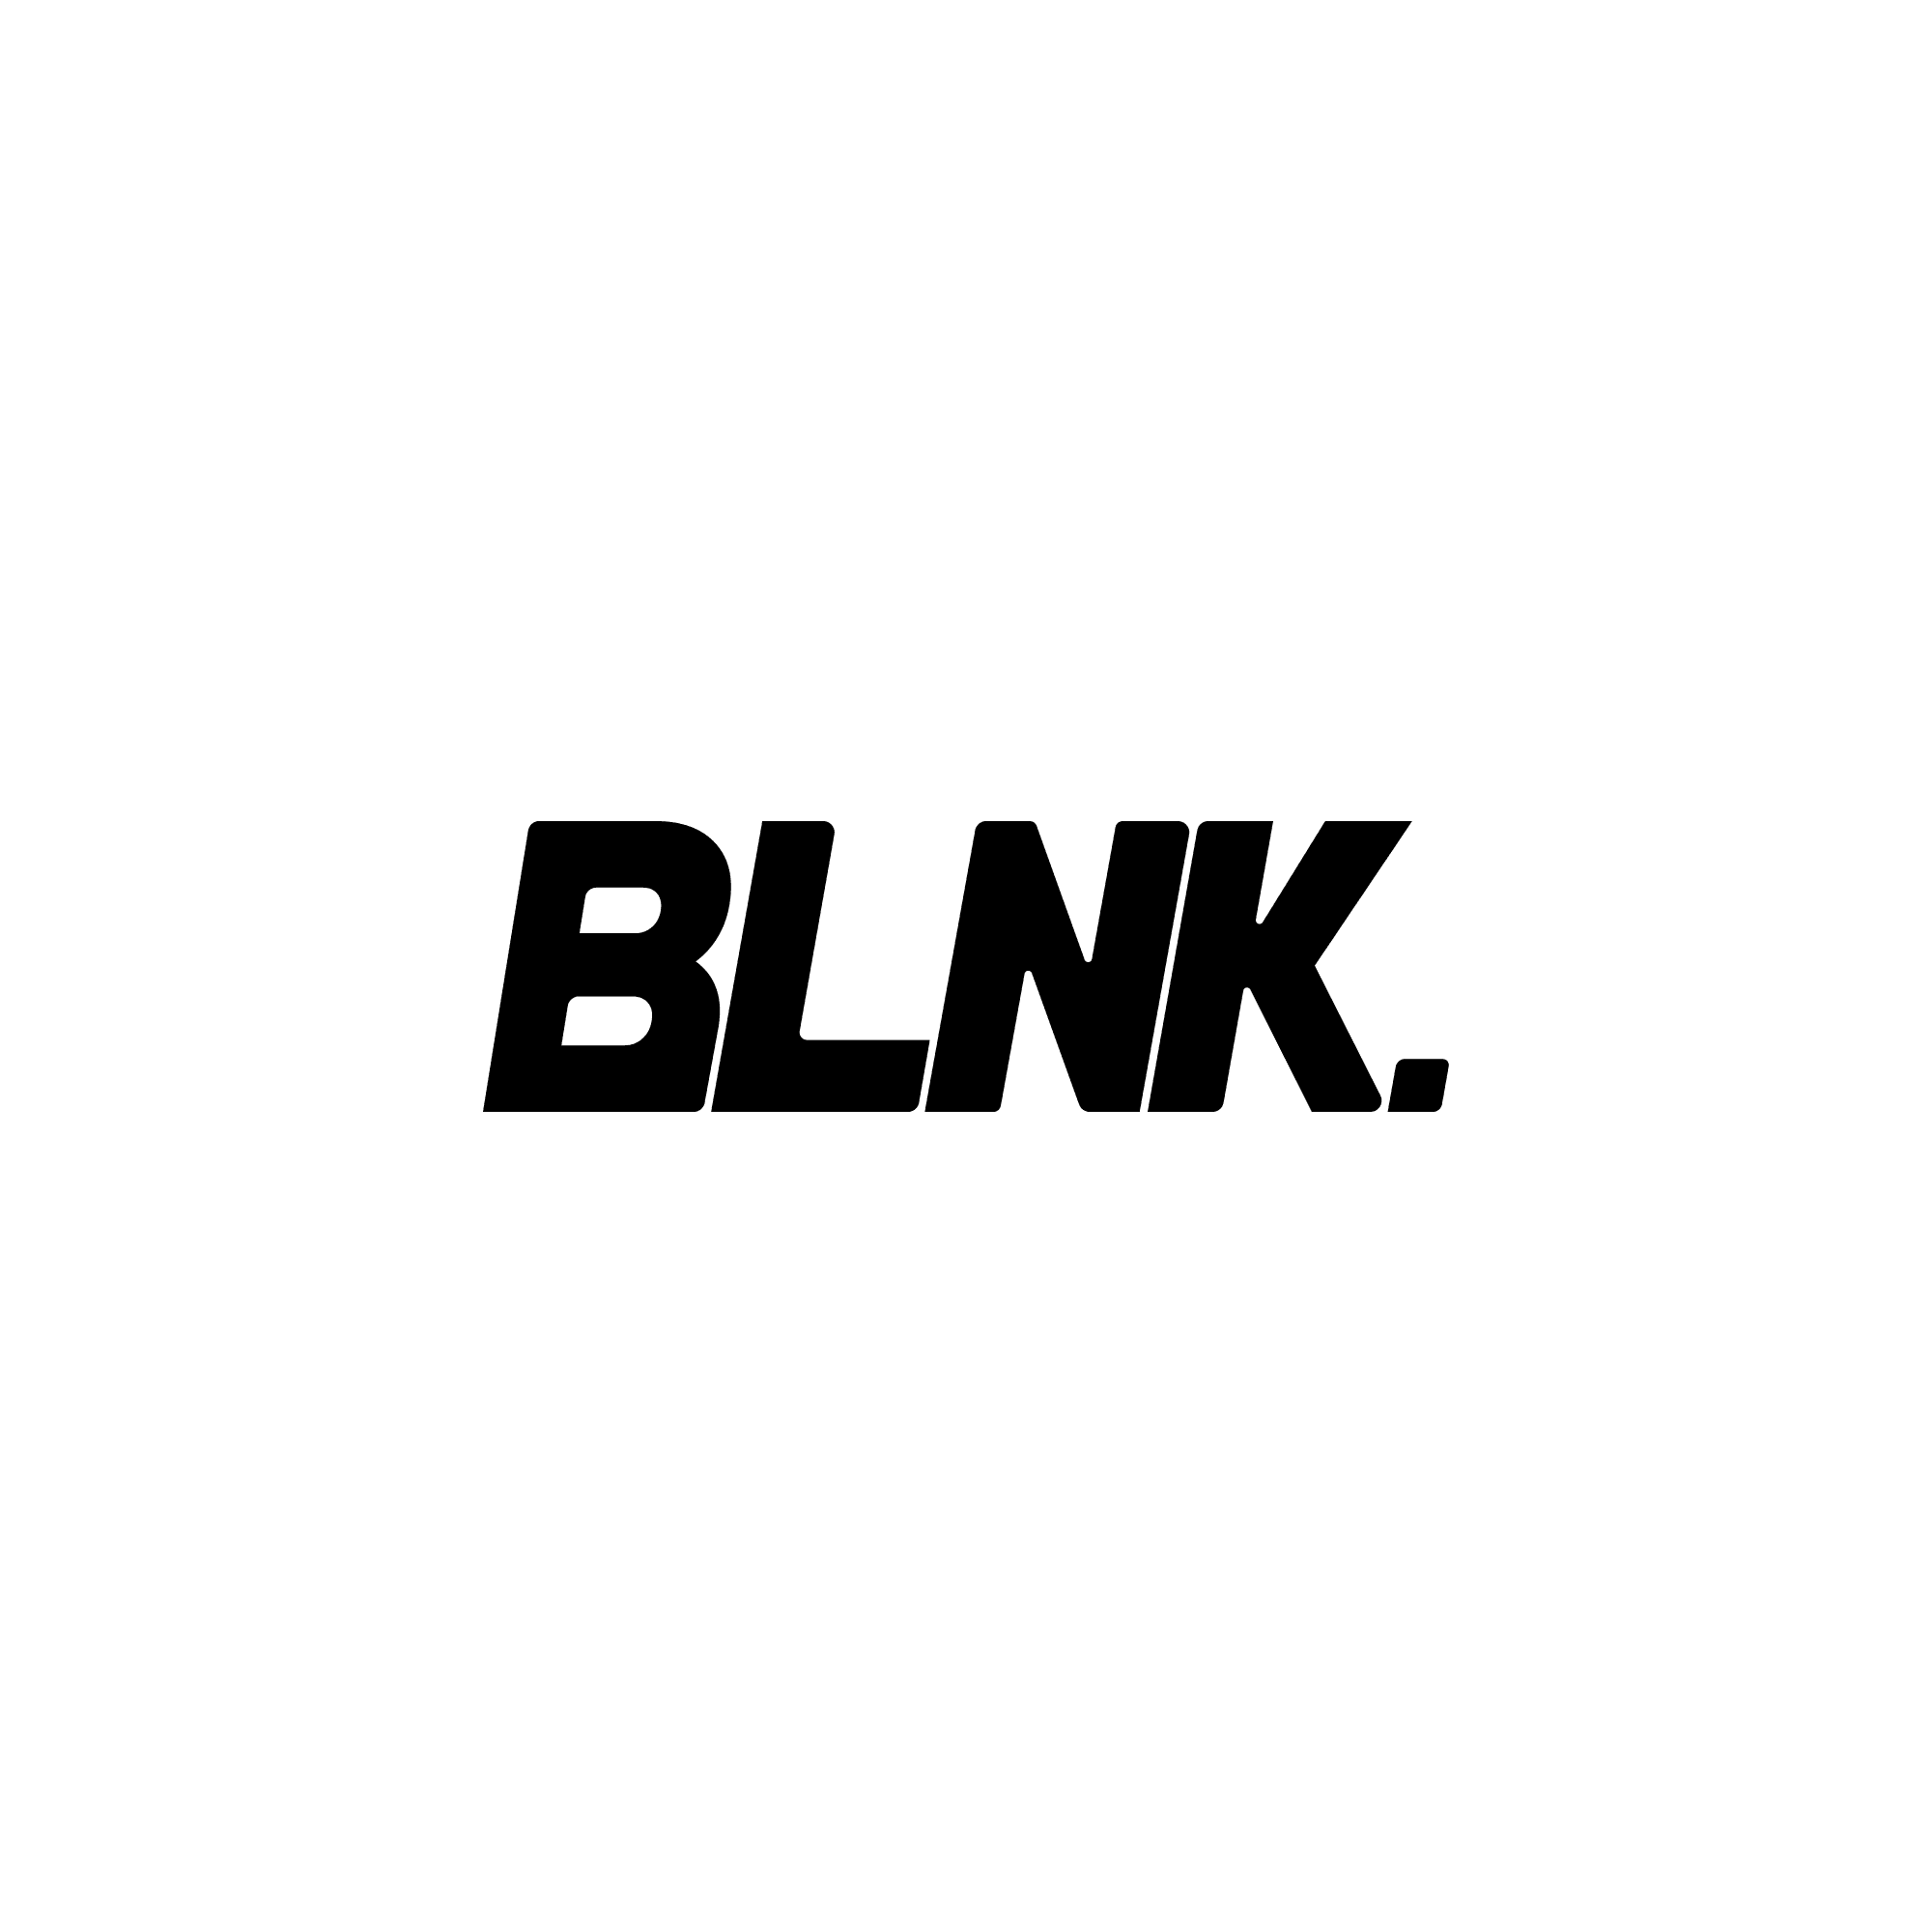 BLNK #1